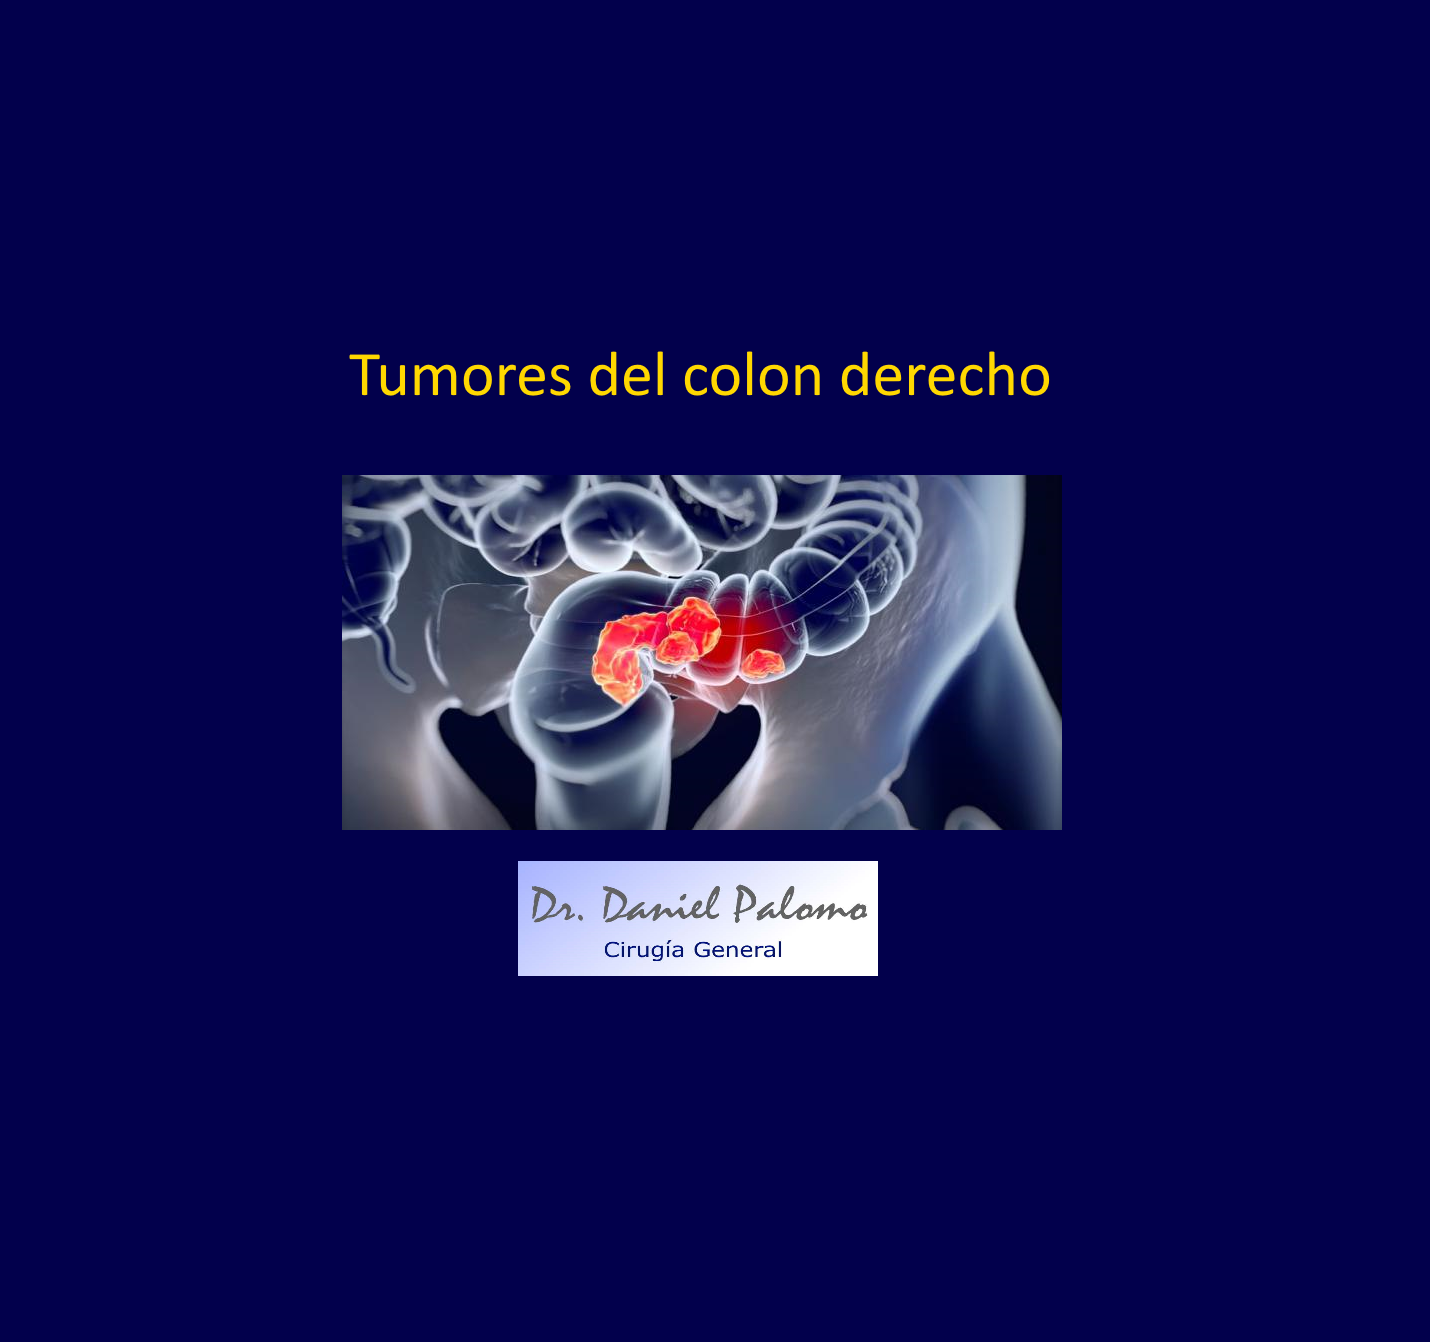 Tumores del colon derecho